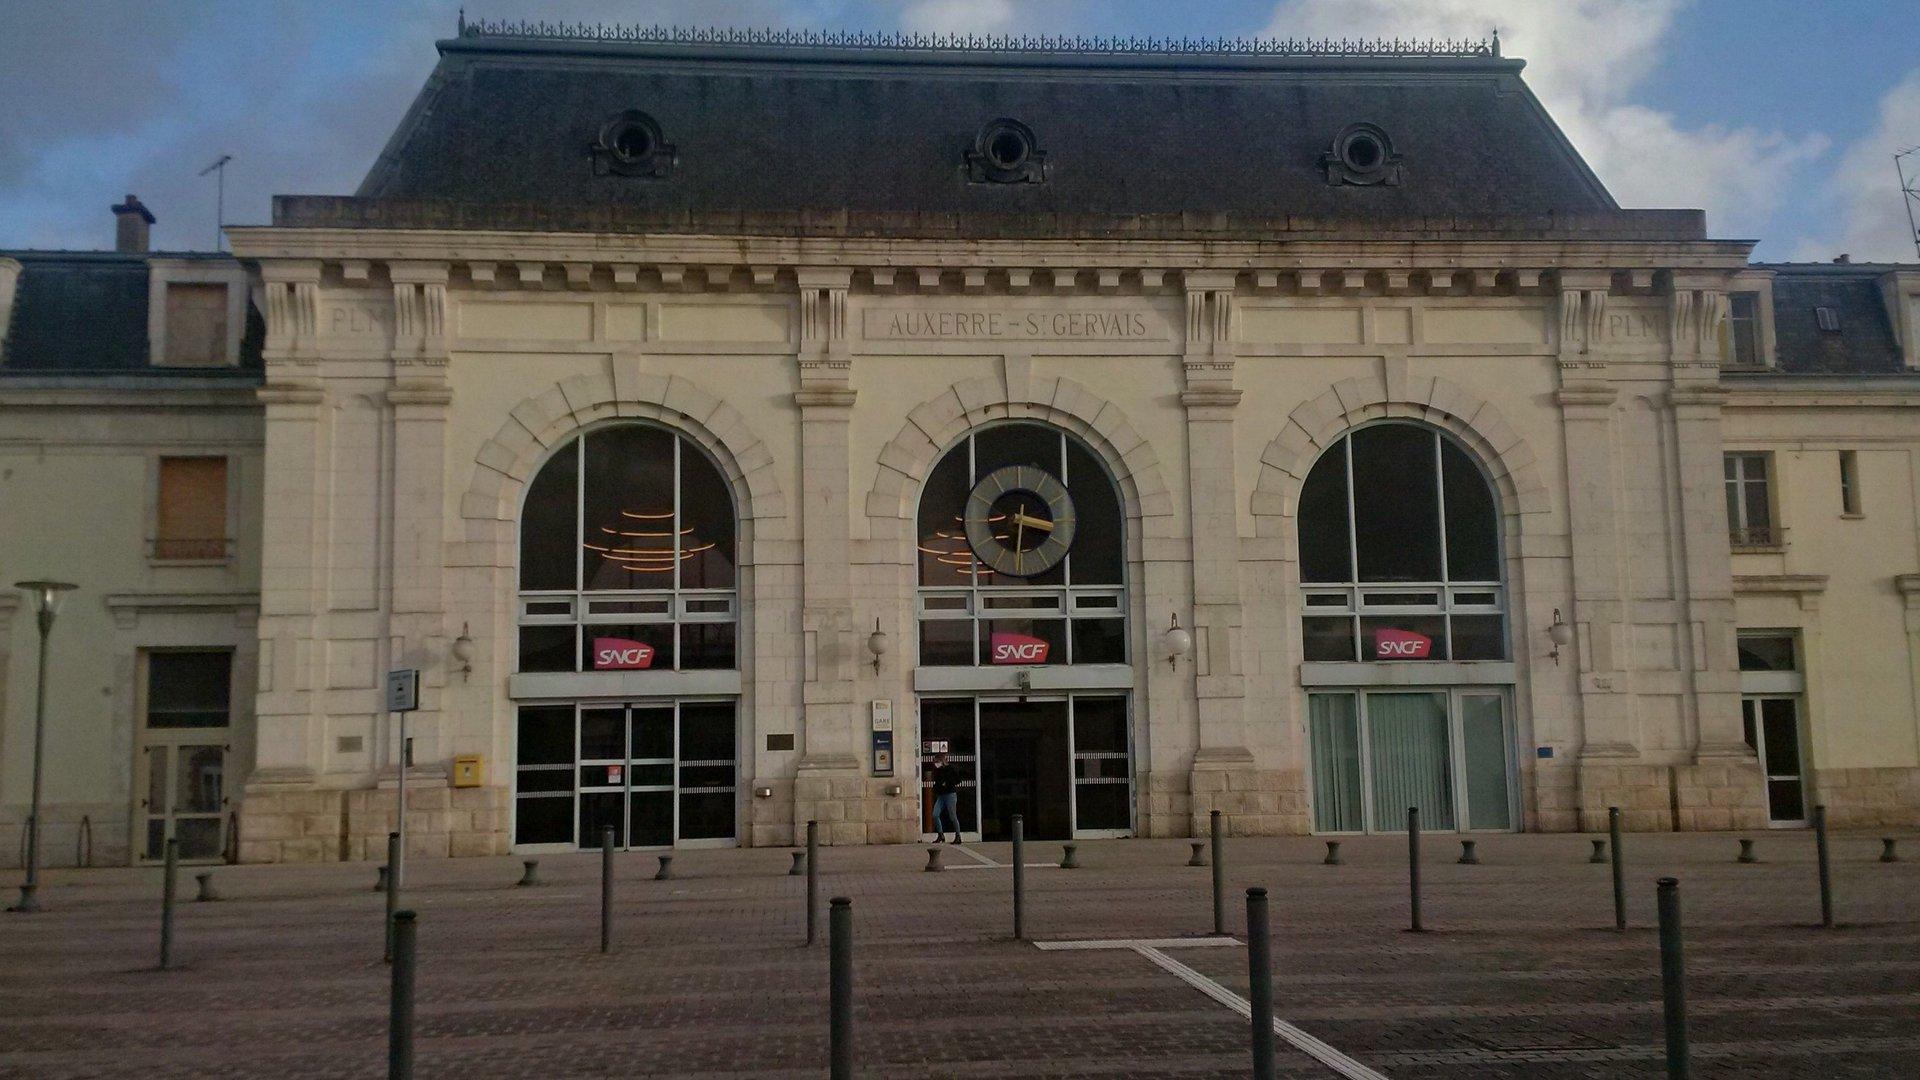 Auxerre-St-Gervais